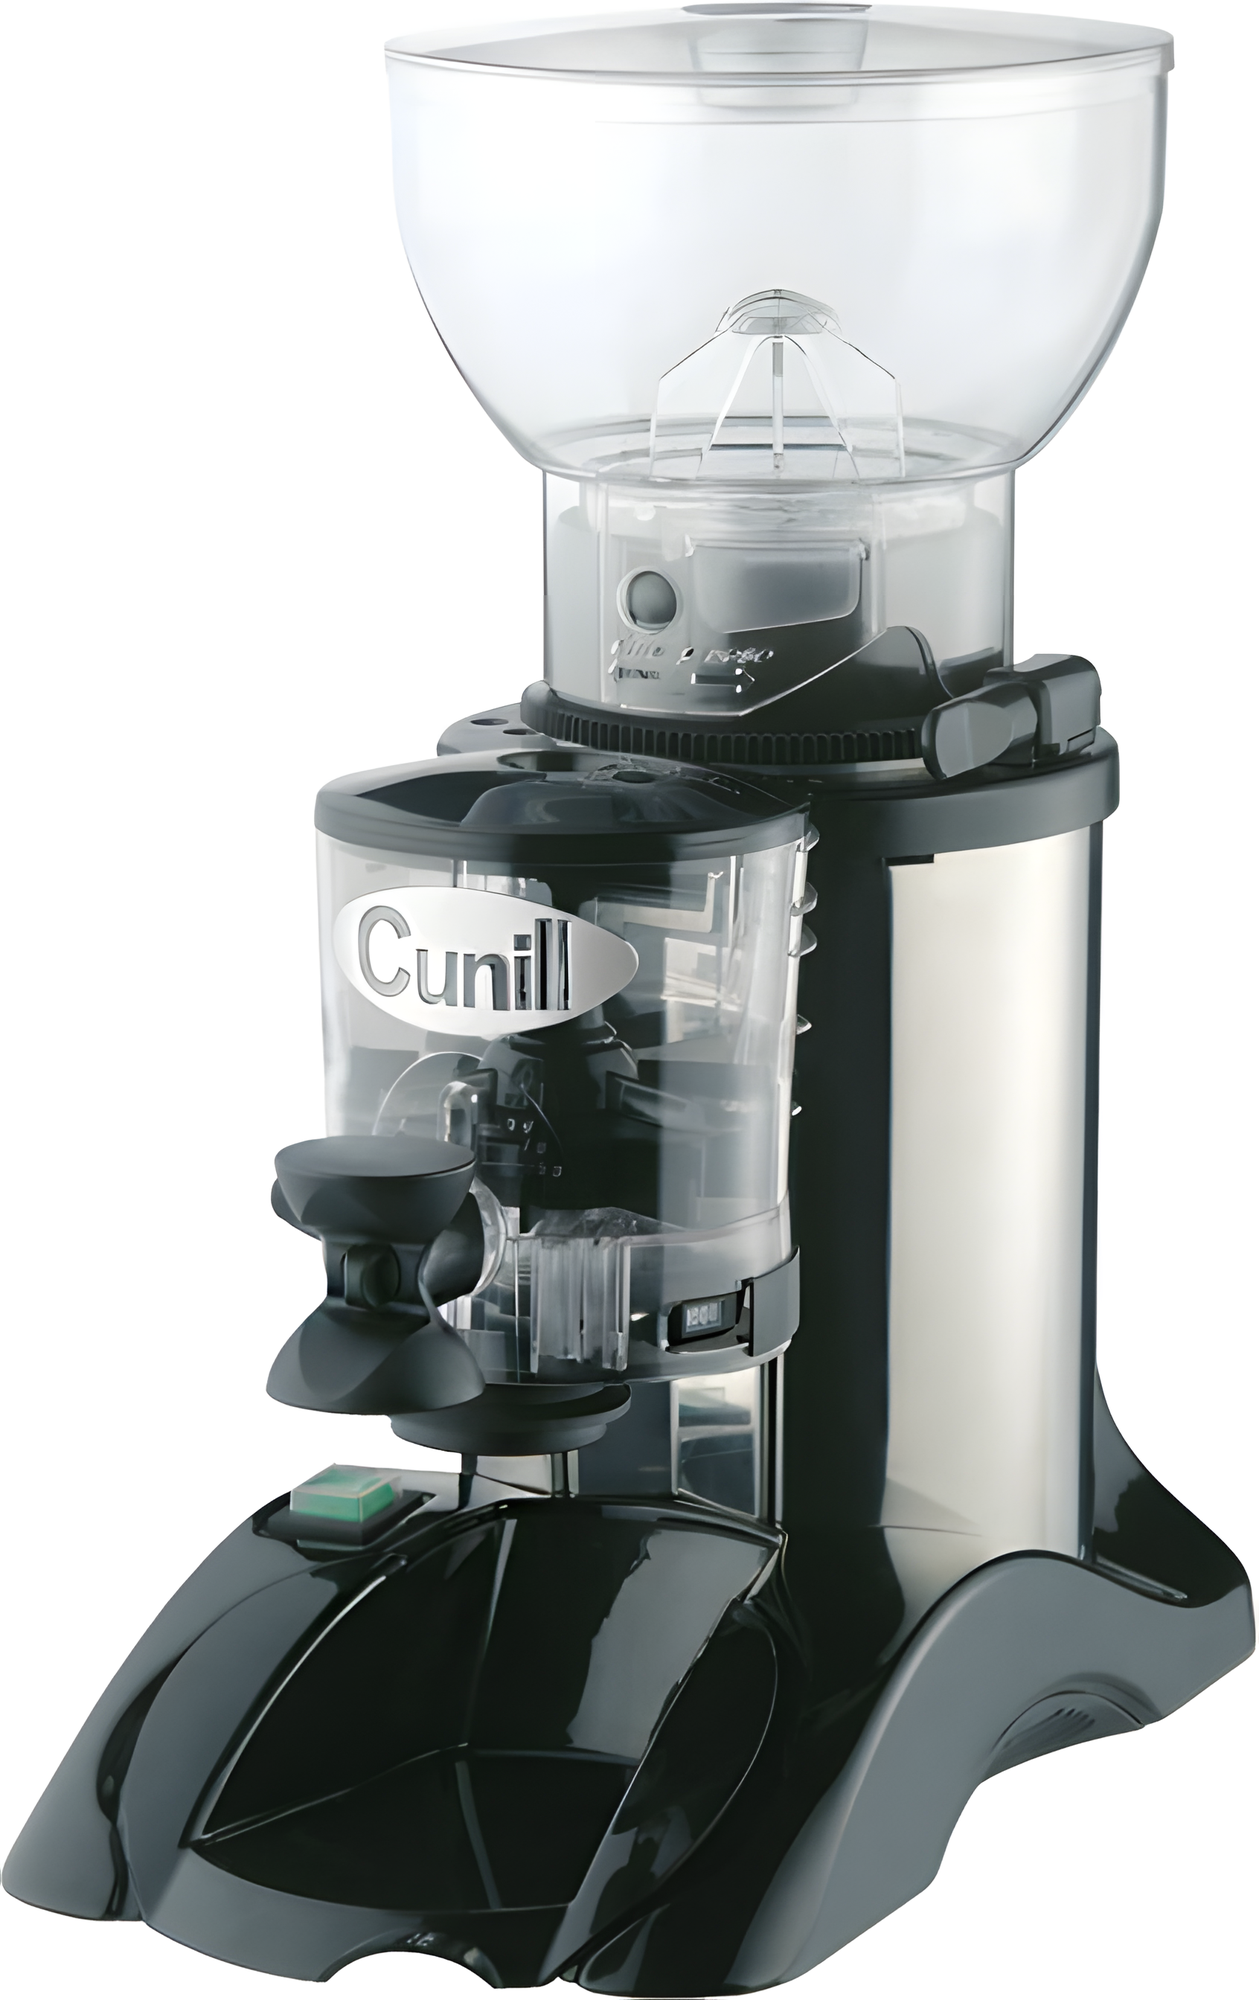 Кофемолка CUNILL BRASIL black. 0.275 кВт счетчик пропорций теплозащита беспрерывная работа до 30 мин